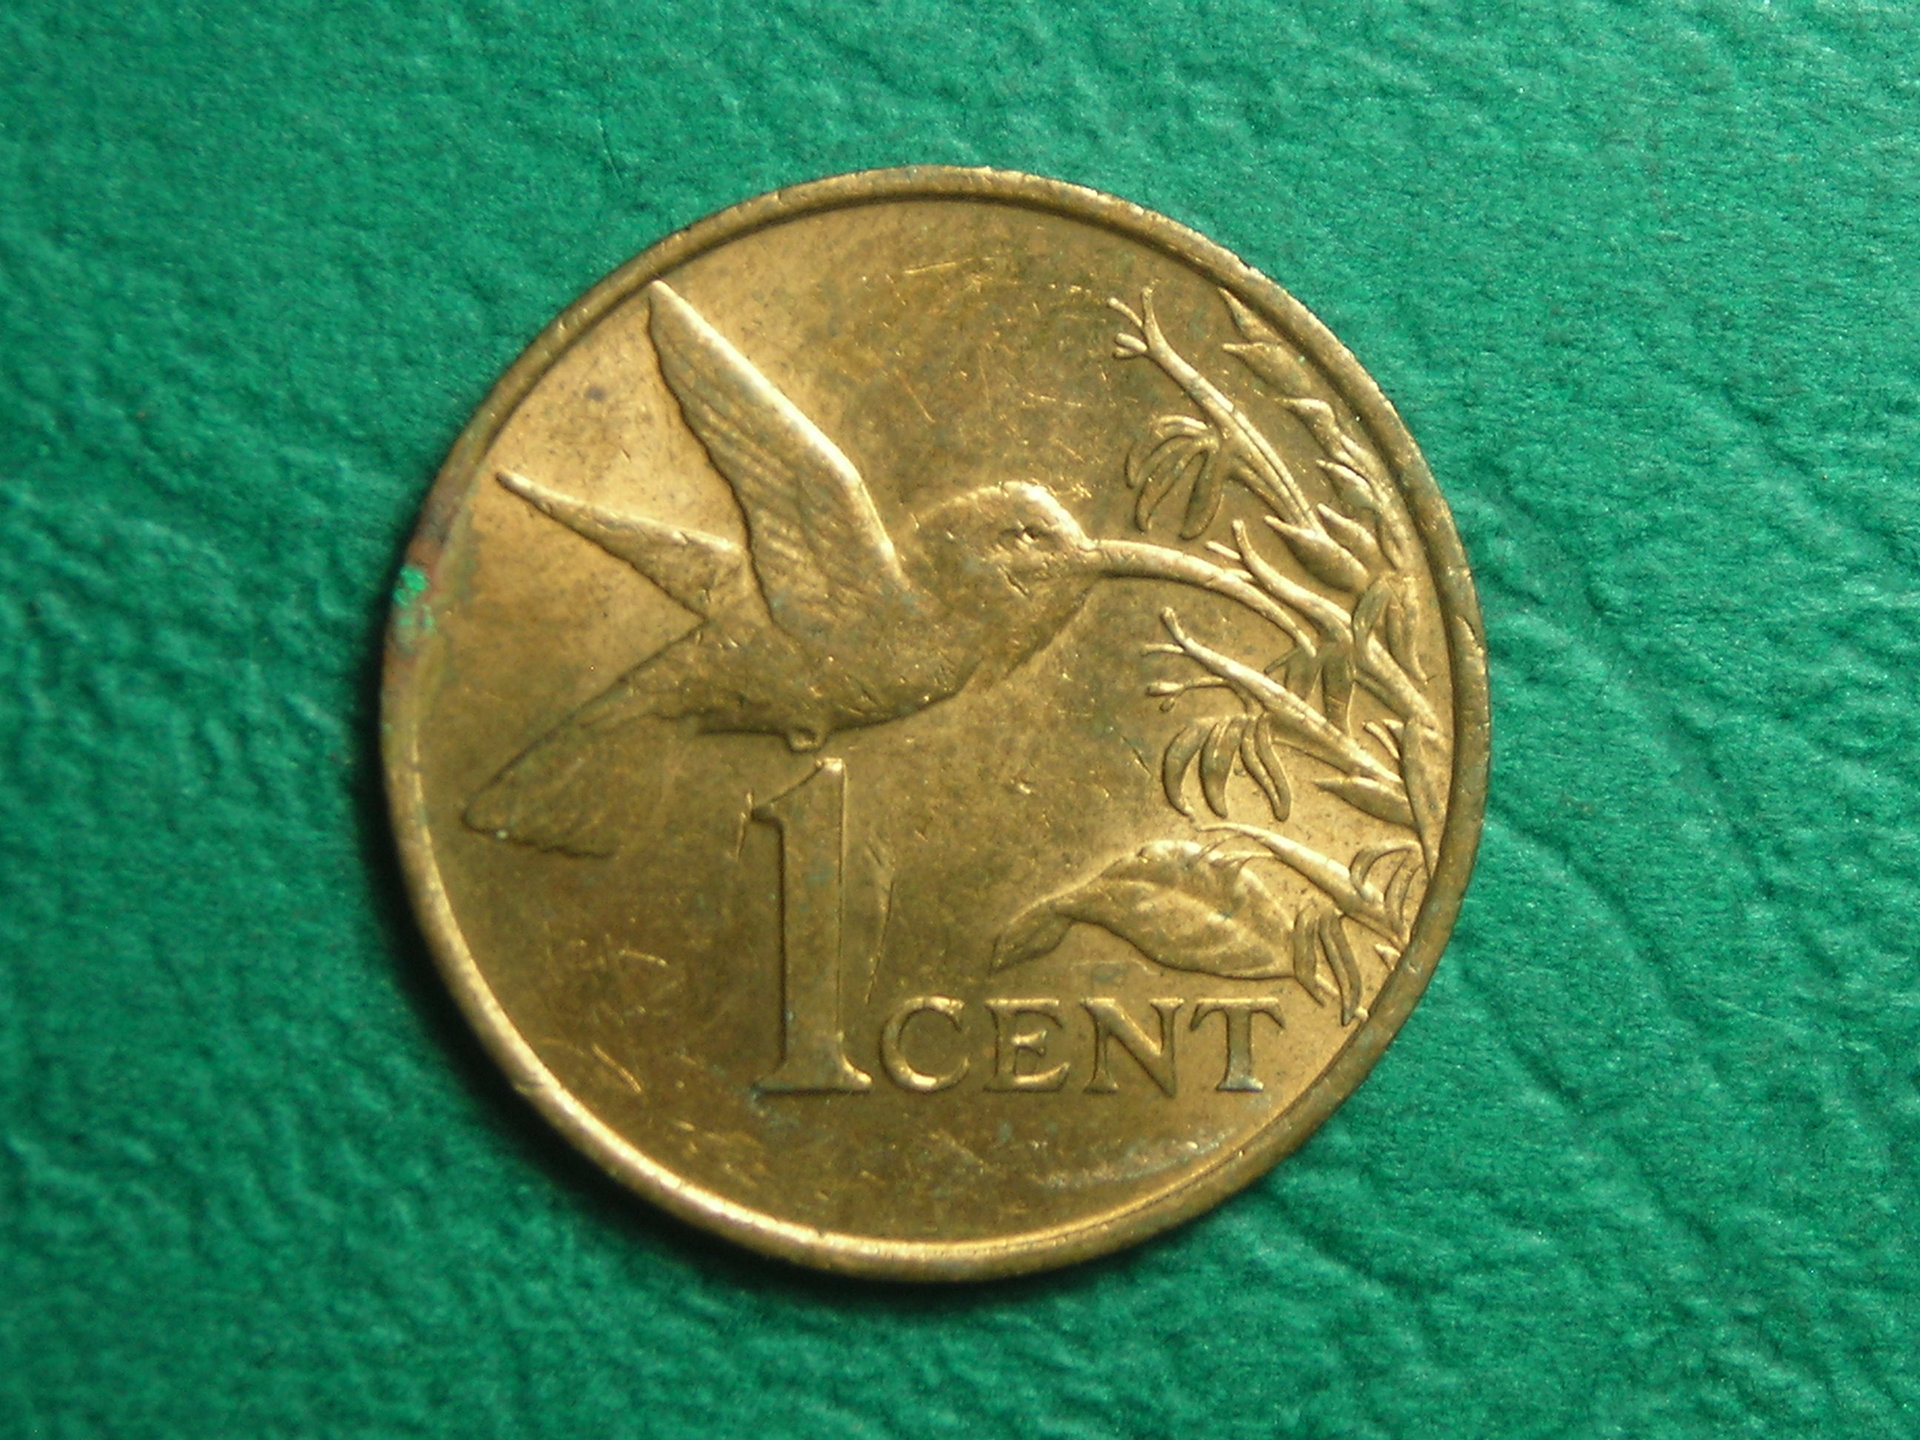 1983 Trinidad 1 cent obv.JPG